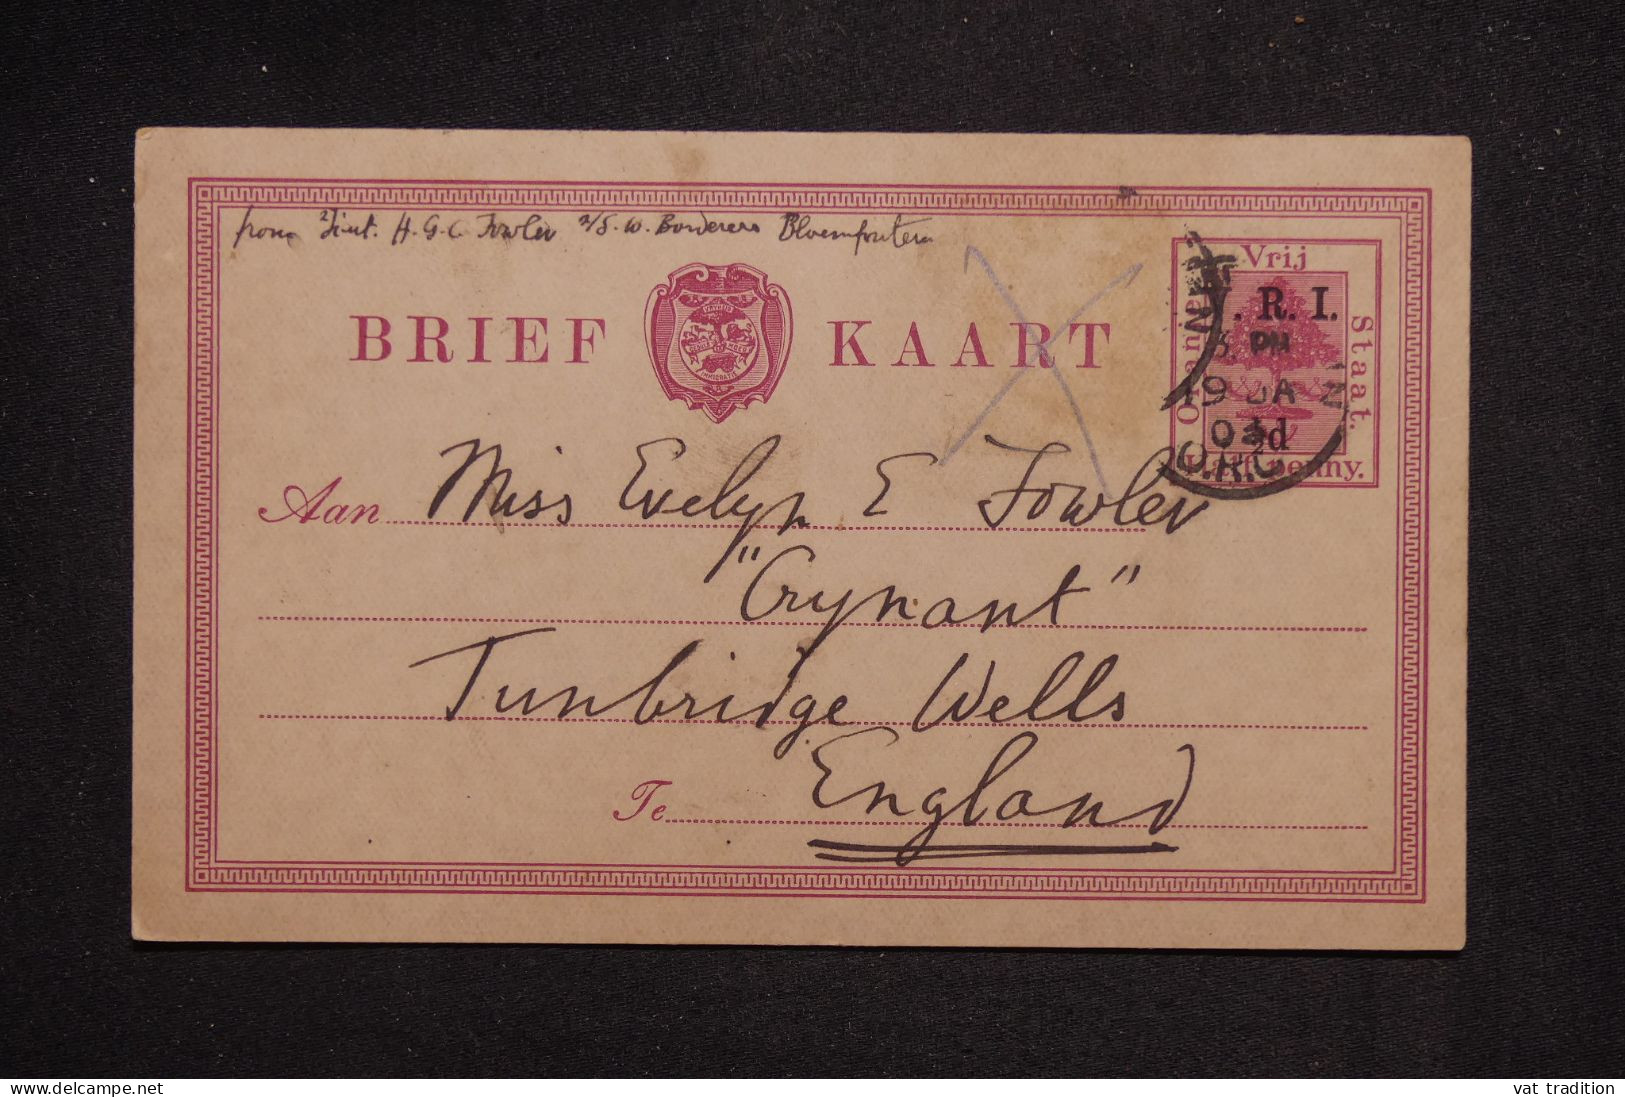 ETAT LIBRE D'ORANGE - Entier Postal Surchargé Pour La Grande Bretagne En 1903, Complément Disparu - L 151387 - Stato Libero Dell'Orange (1868-1909)